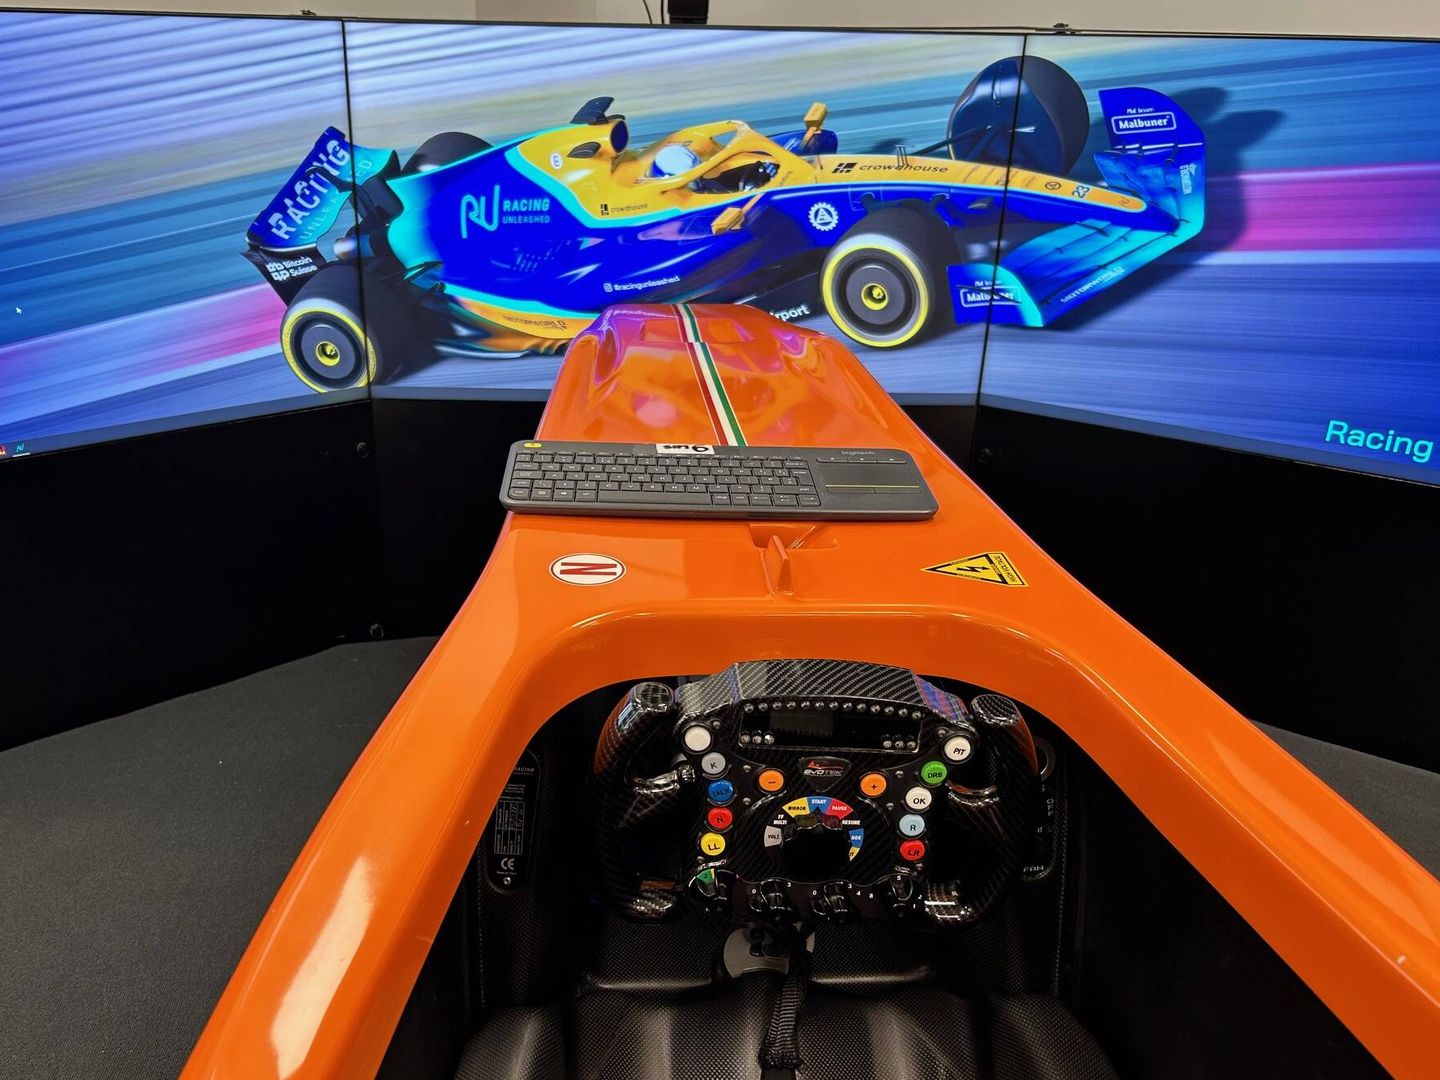 El simulador cuenta con cuatro niveles de dificultad a elegir desde el volante (Javier Rubio)